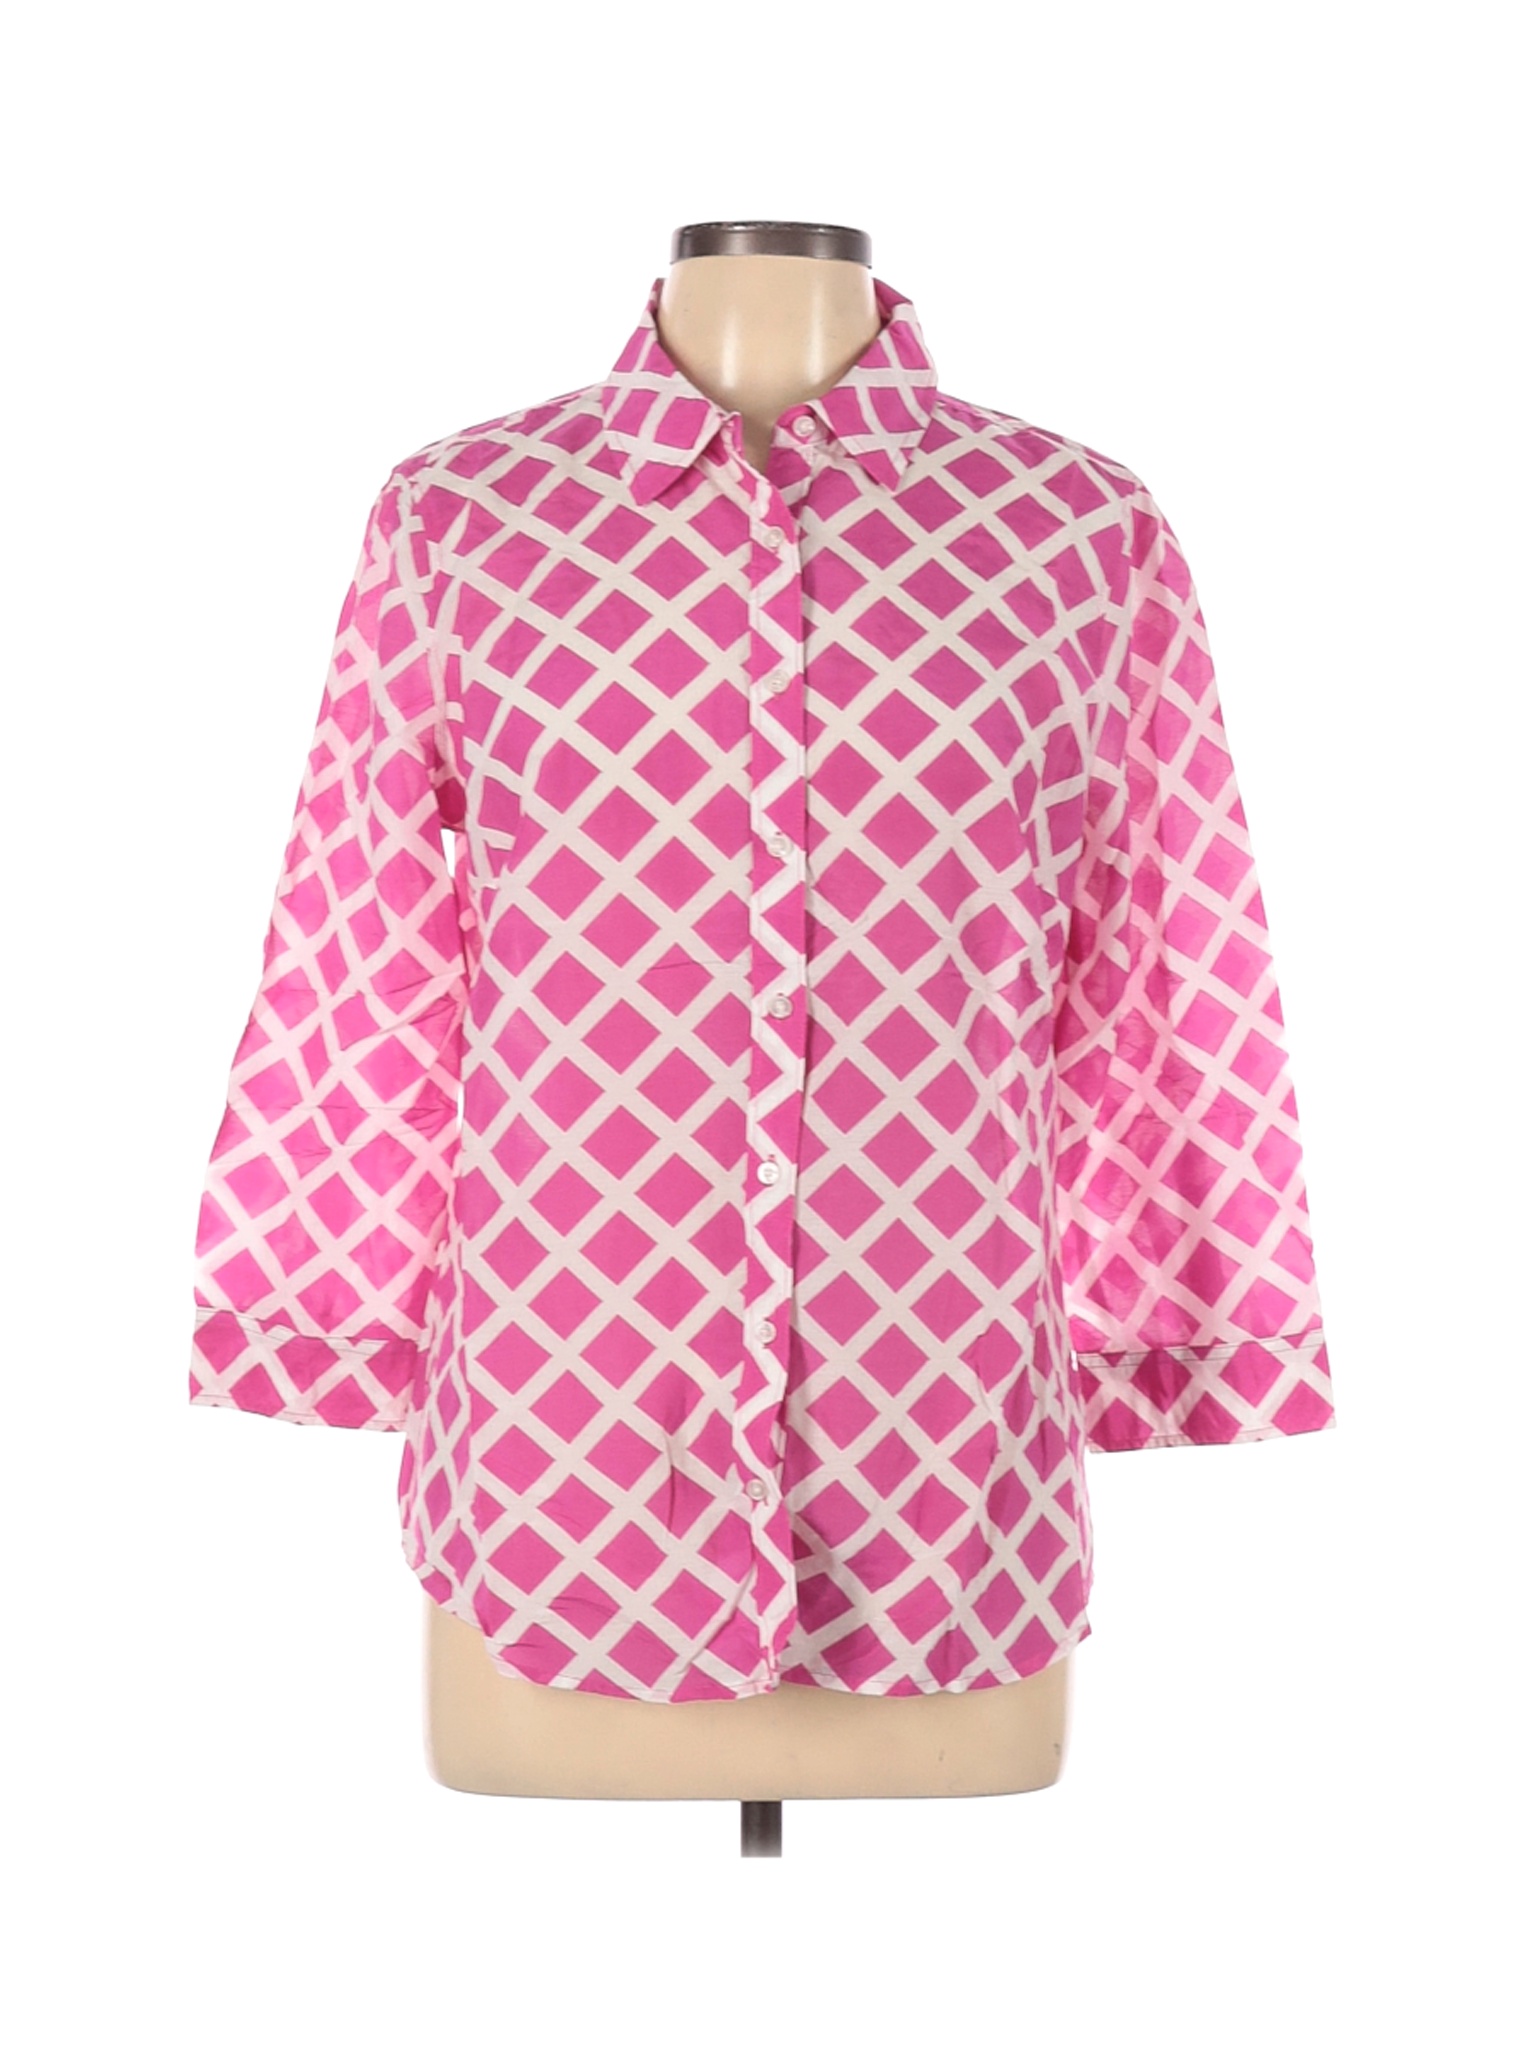 Jcpenney Women Pink 3/4 Sleeve Button-Down Shirt L | eBay